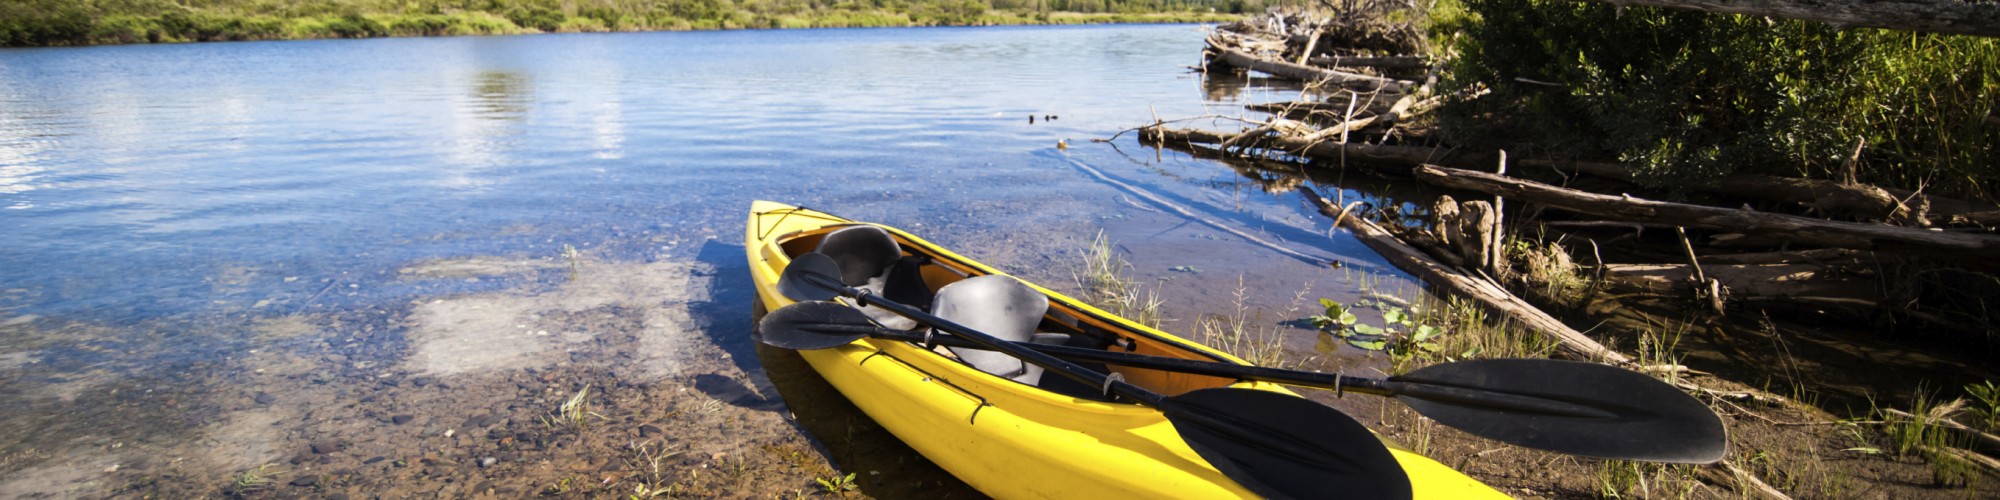 Kayak sur le bord d'une rivière